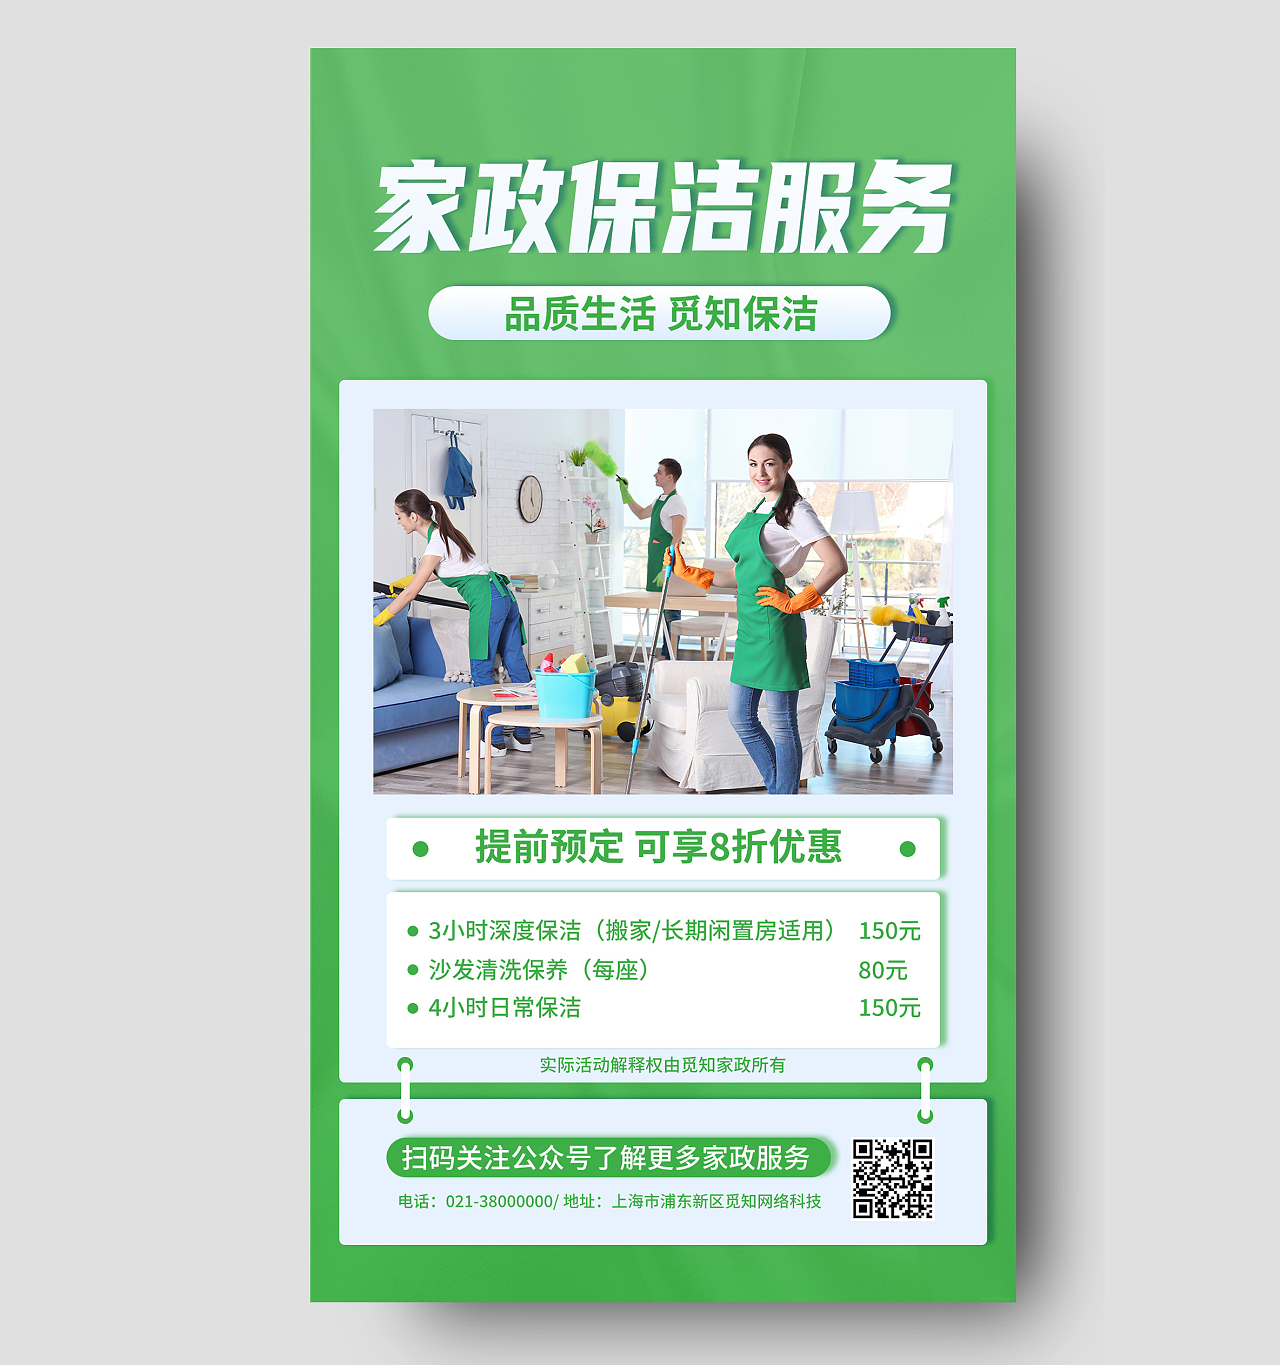 绿色简约家政保洁服务保洁品质生活保洁手机宣传海报